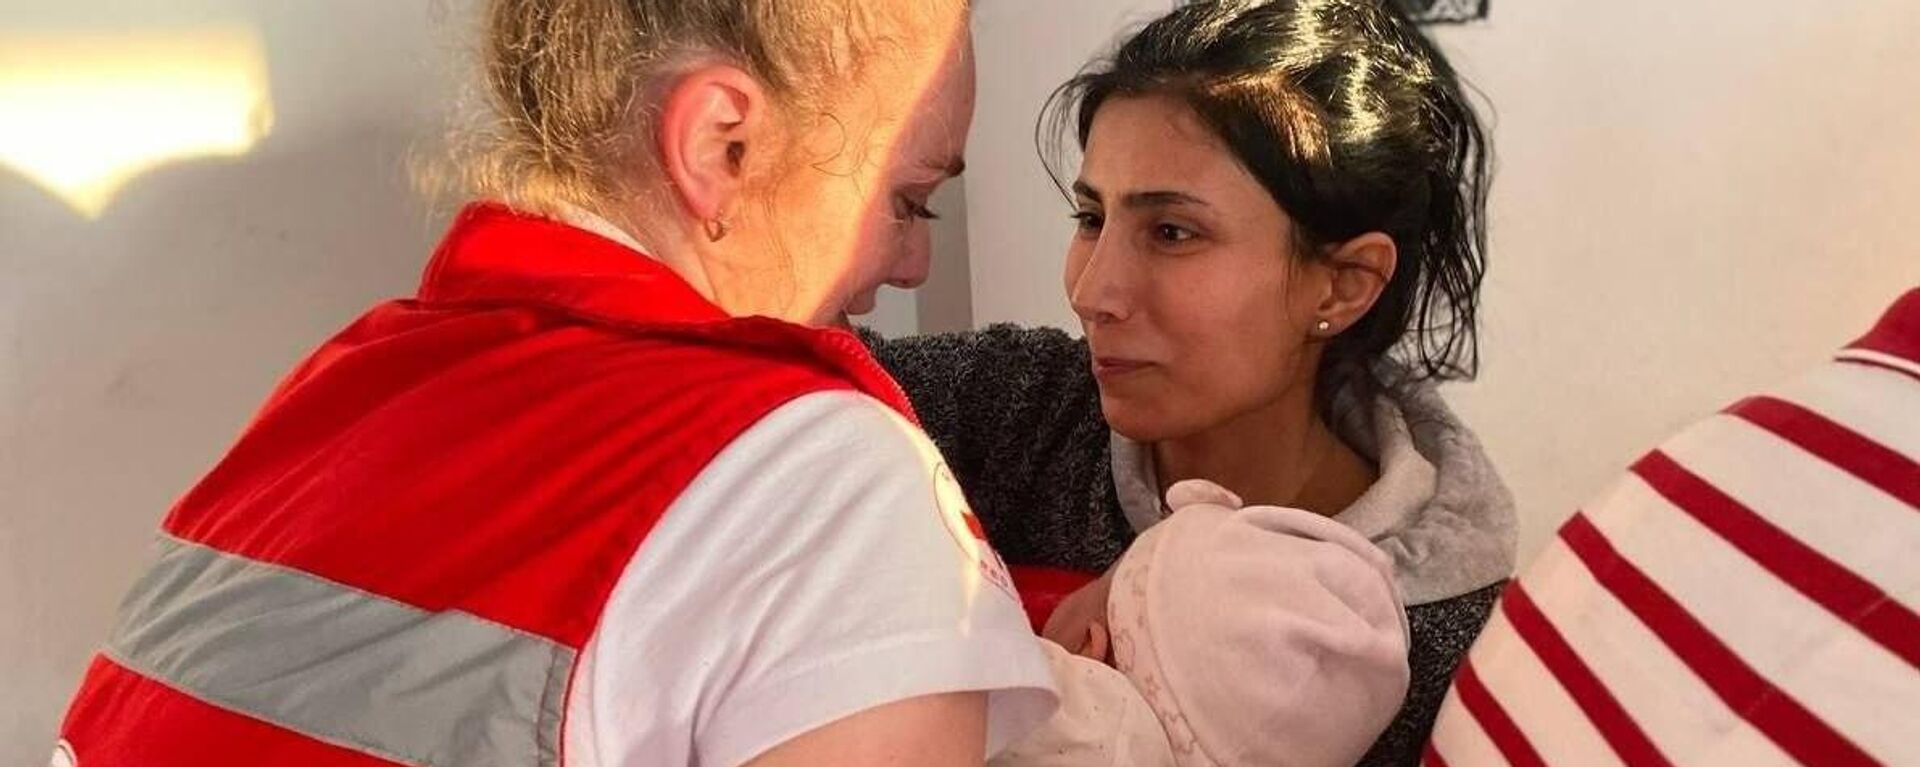 Una especialista de la Cruz Roja de Rusia ayuda a los habitantes de Siria tras el terremoto devastador - Sputnik Mundo, 1920, 31.05.2023